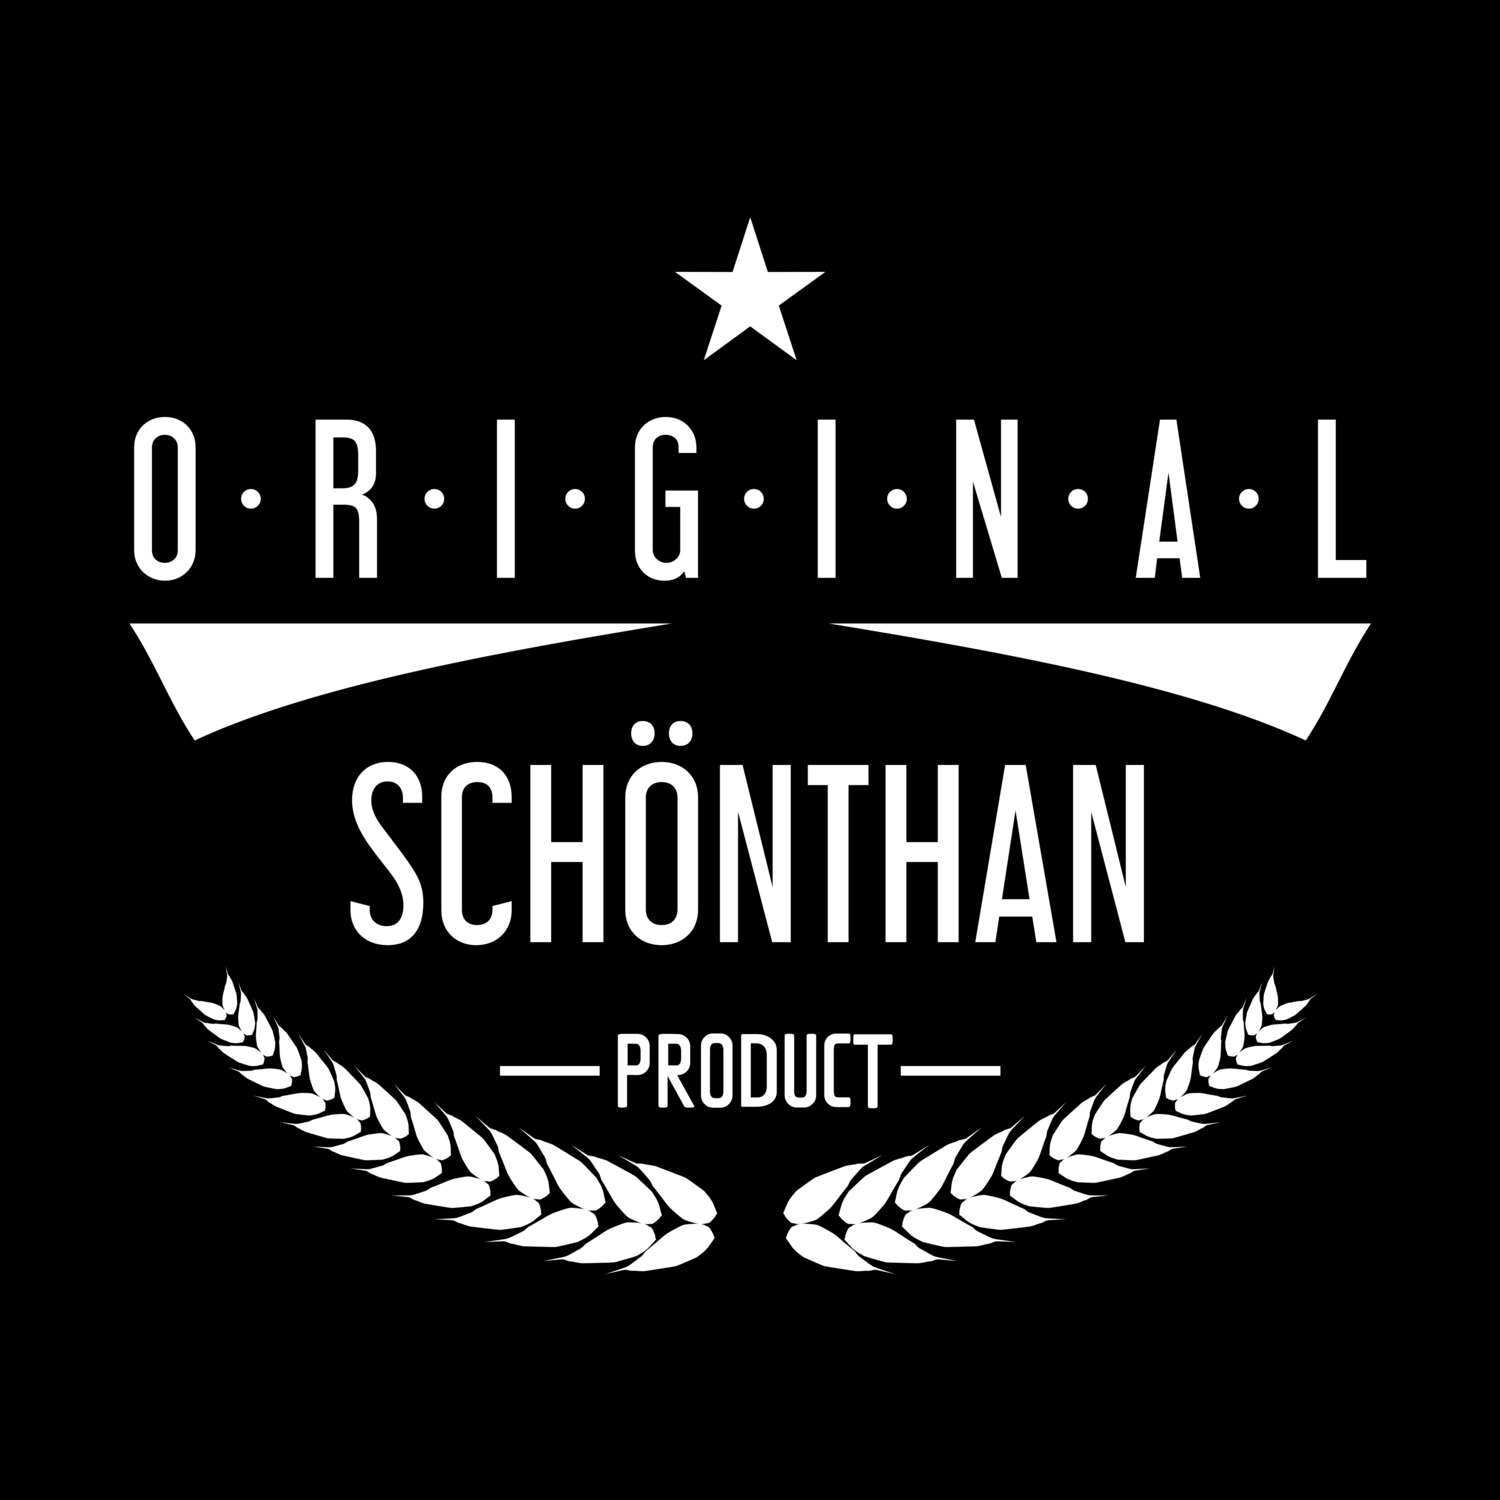 Schönthan T-Shirt »Original Product«